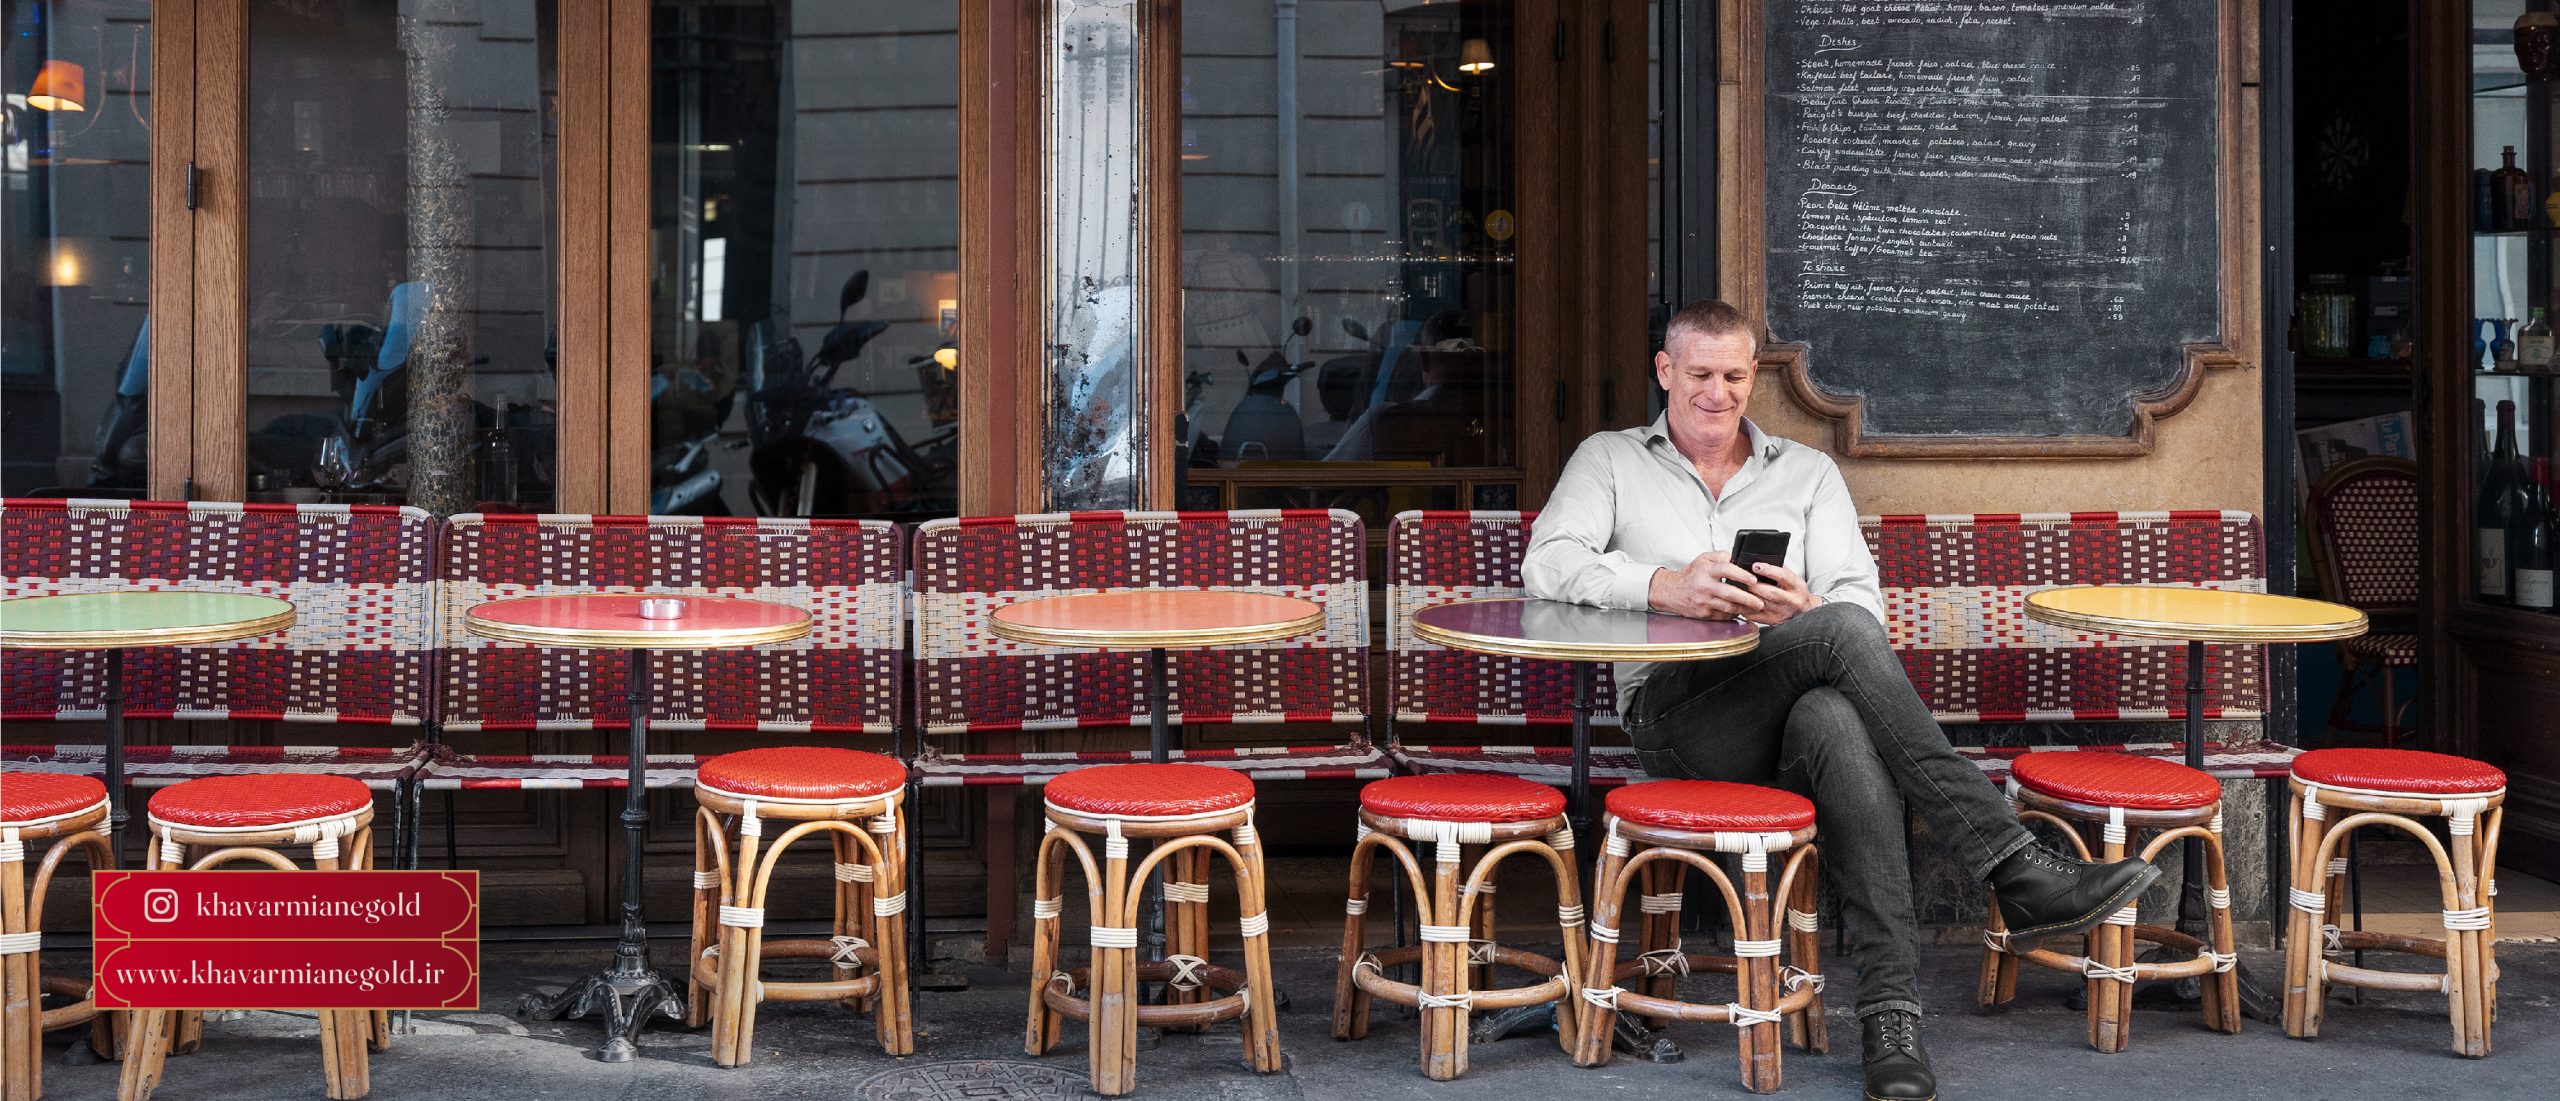 آقایی را نشان میدهد که در صندلی بیرون از رستورانی نزدیک بازار طلا و جواهر خاورمیانه نشسته و لذت میبرد.